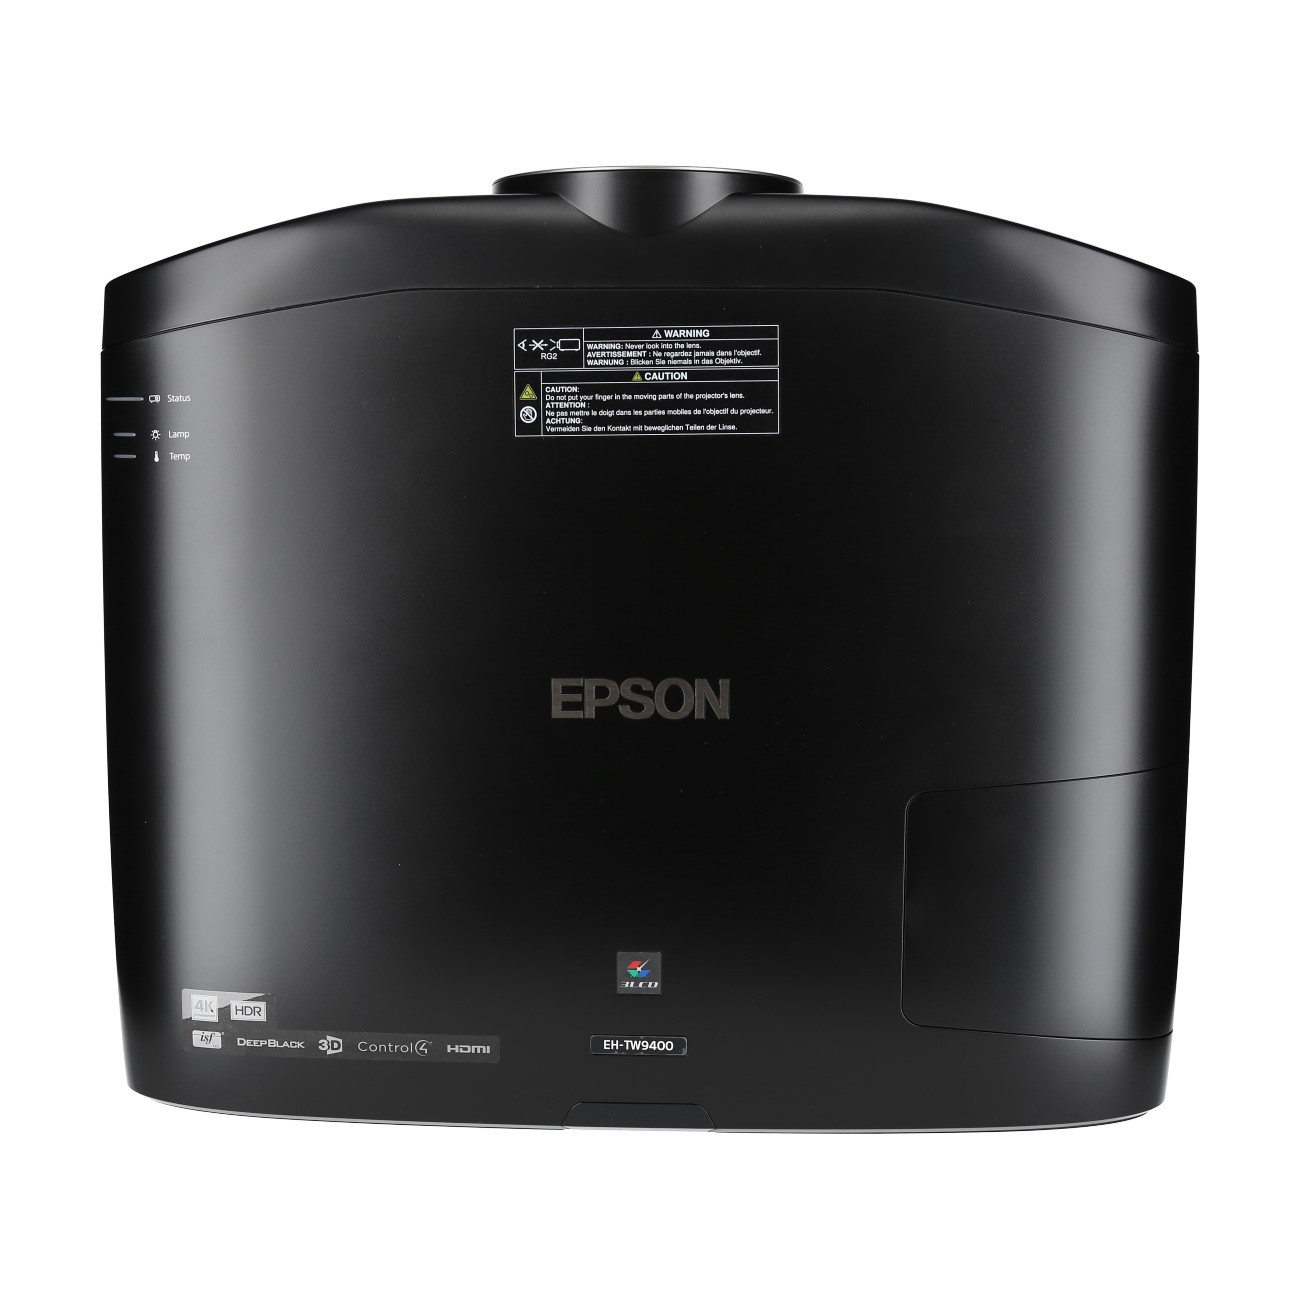 Epson-EH-TW9400